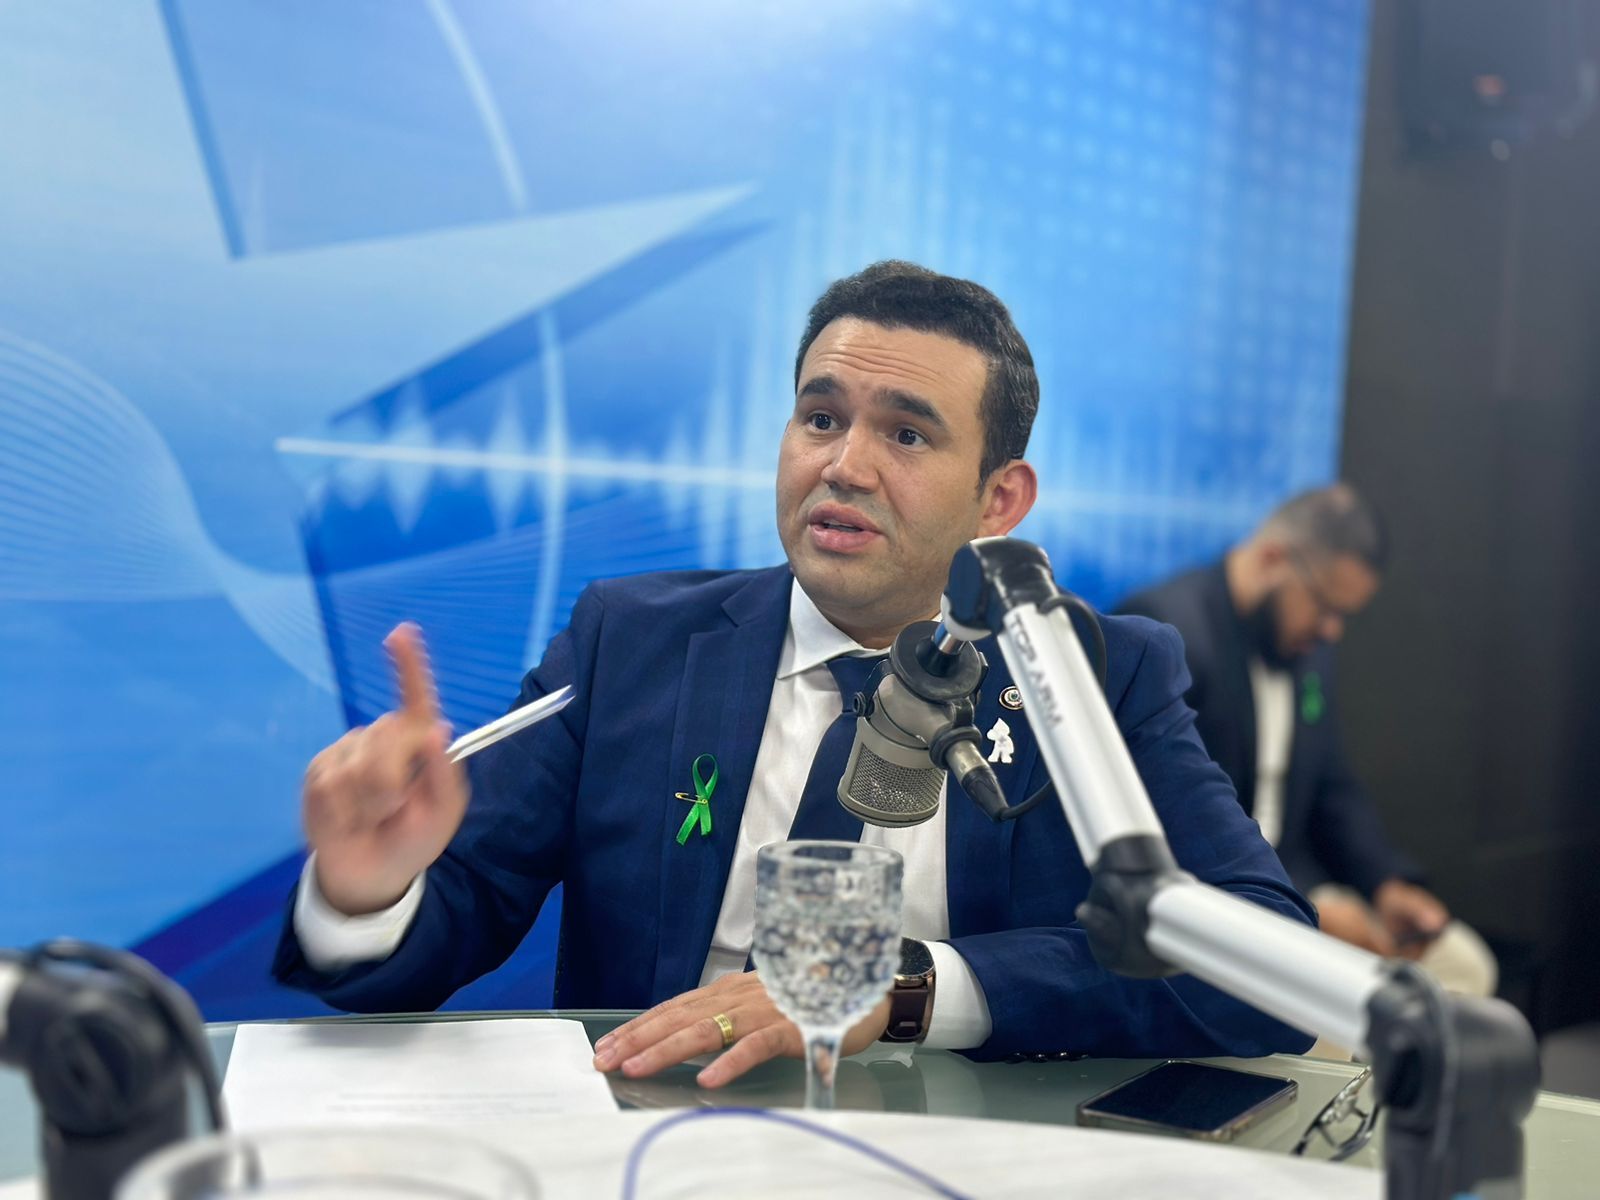 Pré-candidato a prefeito de CG, Dr. Jhony admite diálogo com Romero: “Ele está envolvido nos debates sobre Campina”